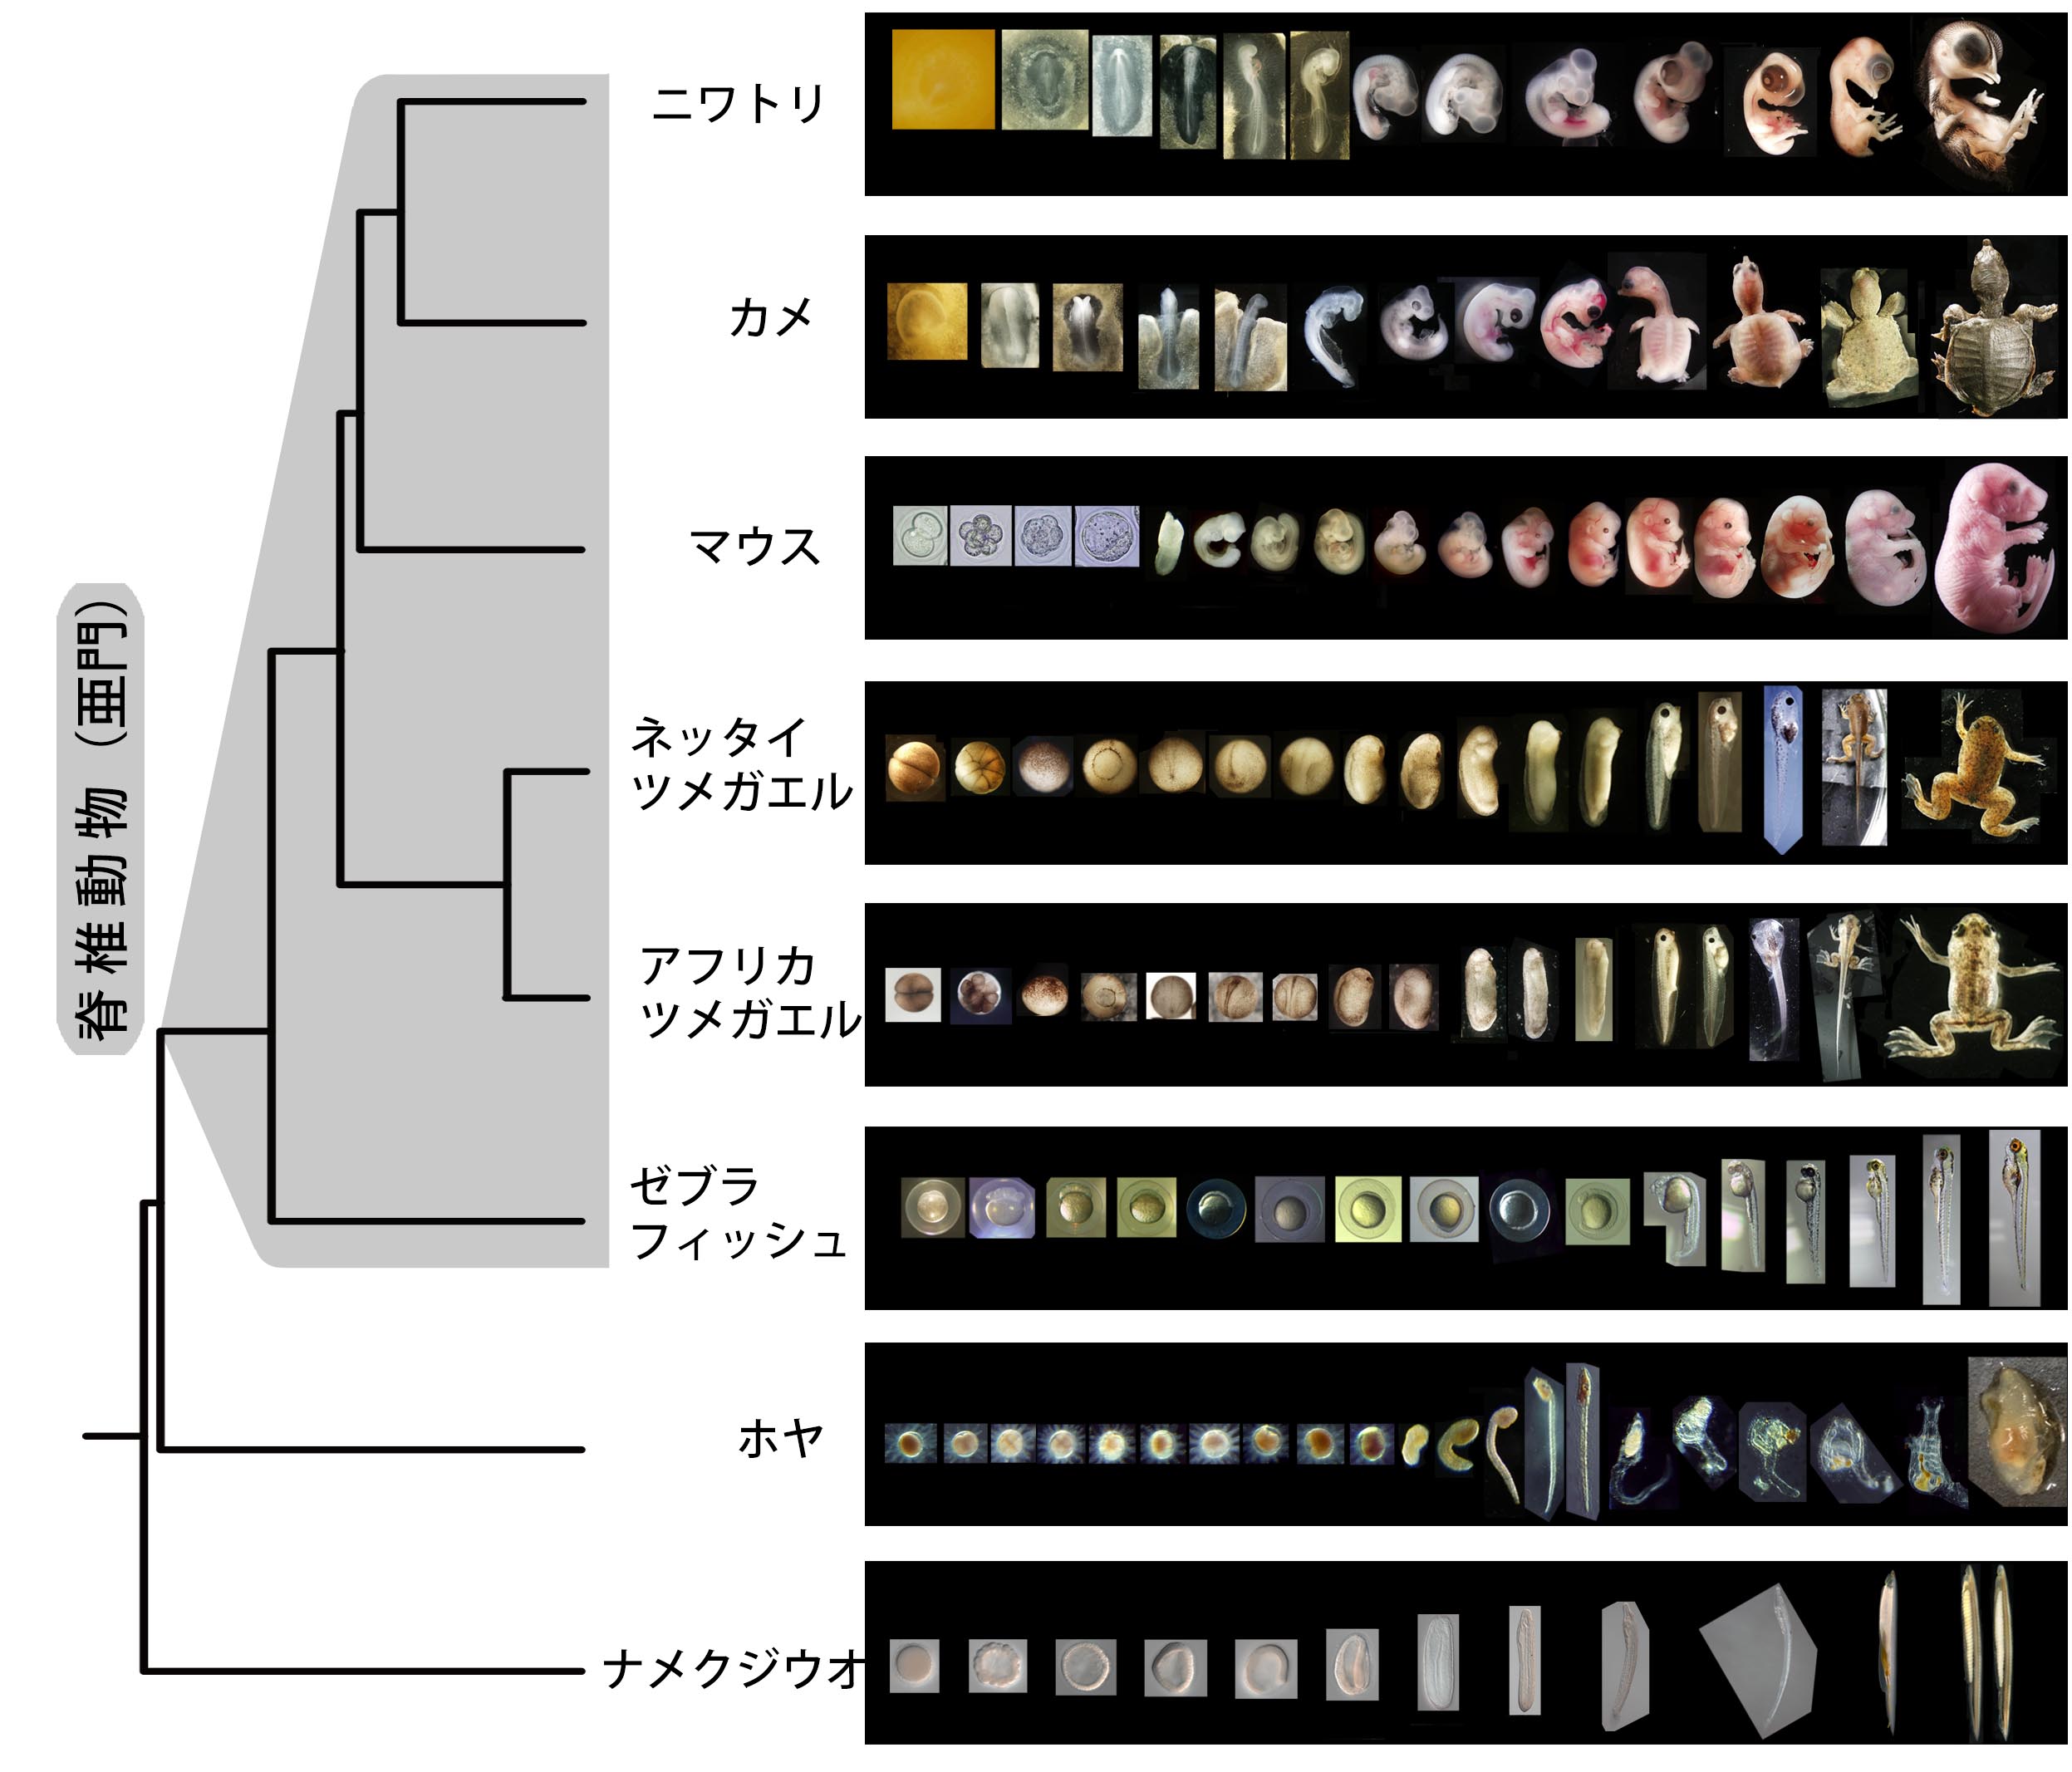 脊椎動物の基本構造が５億年以上変わらなかった理由 東京大学 大学院理学系研究科 理学部